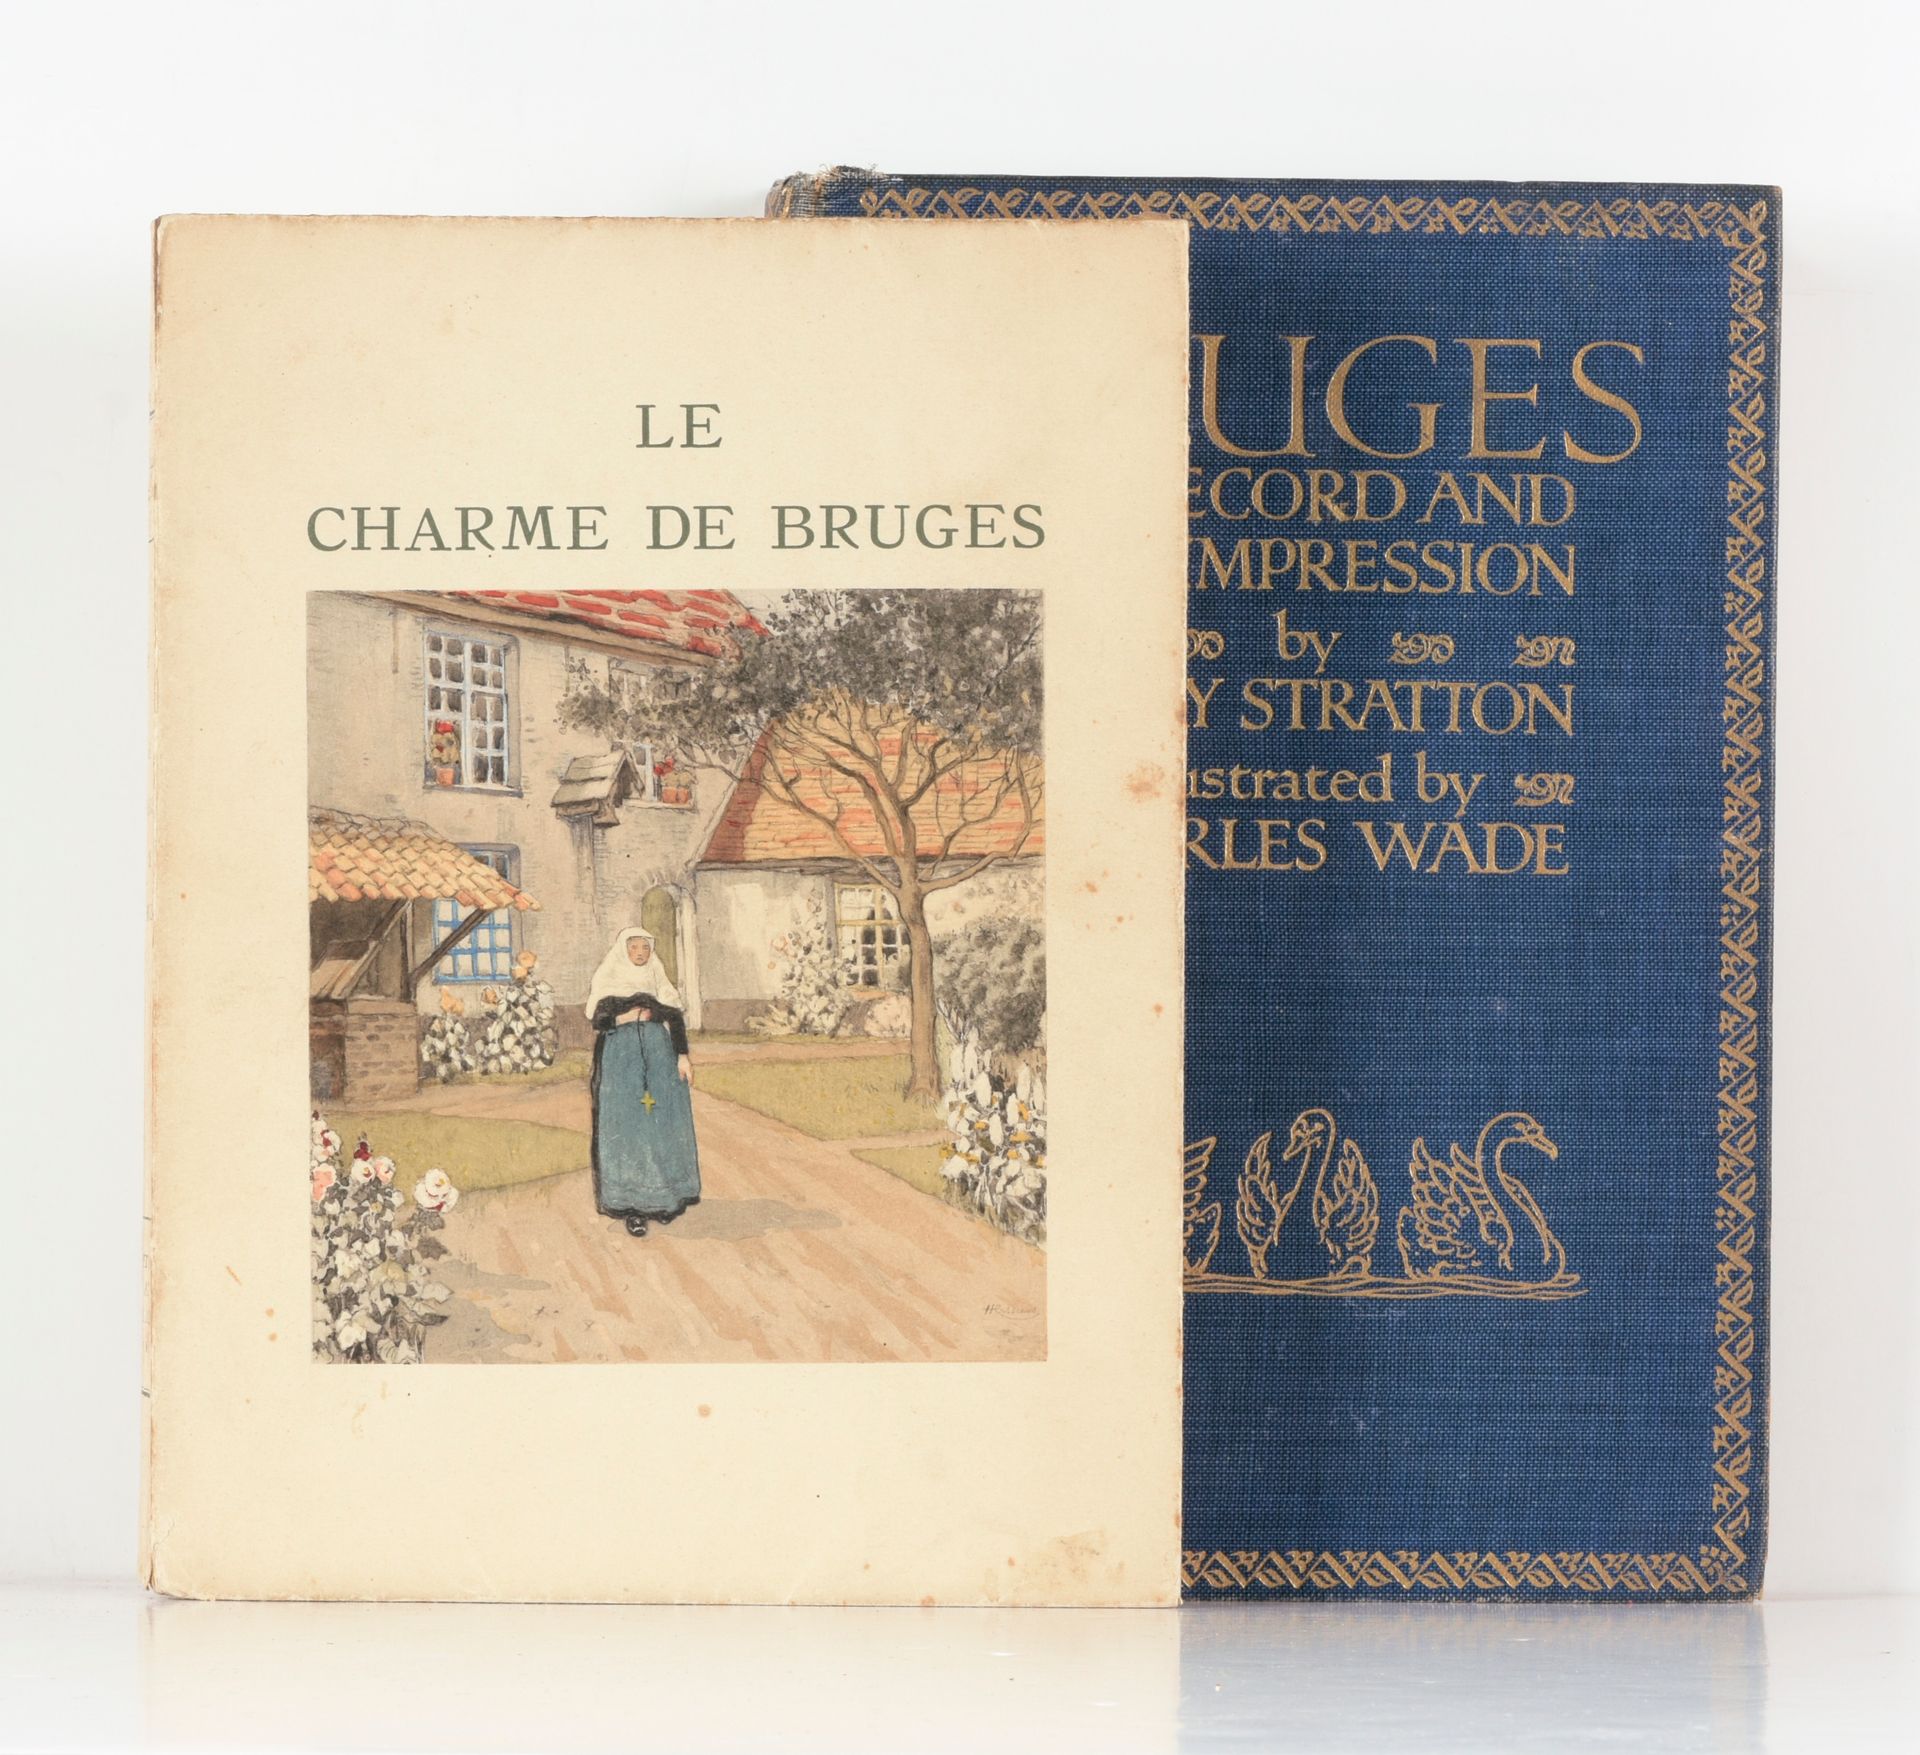 MAUCLAIR, Camille Le charme de Bruges

Paris
H.Piazza
1943

8°，H. CASSIERS的彩色插图，&hellip;